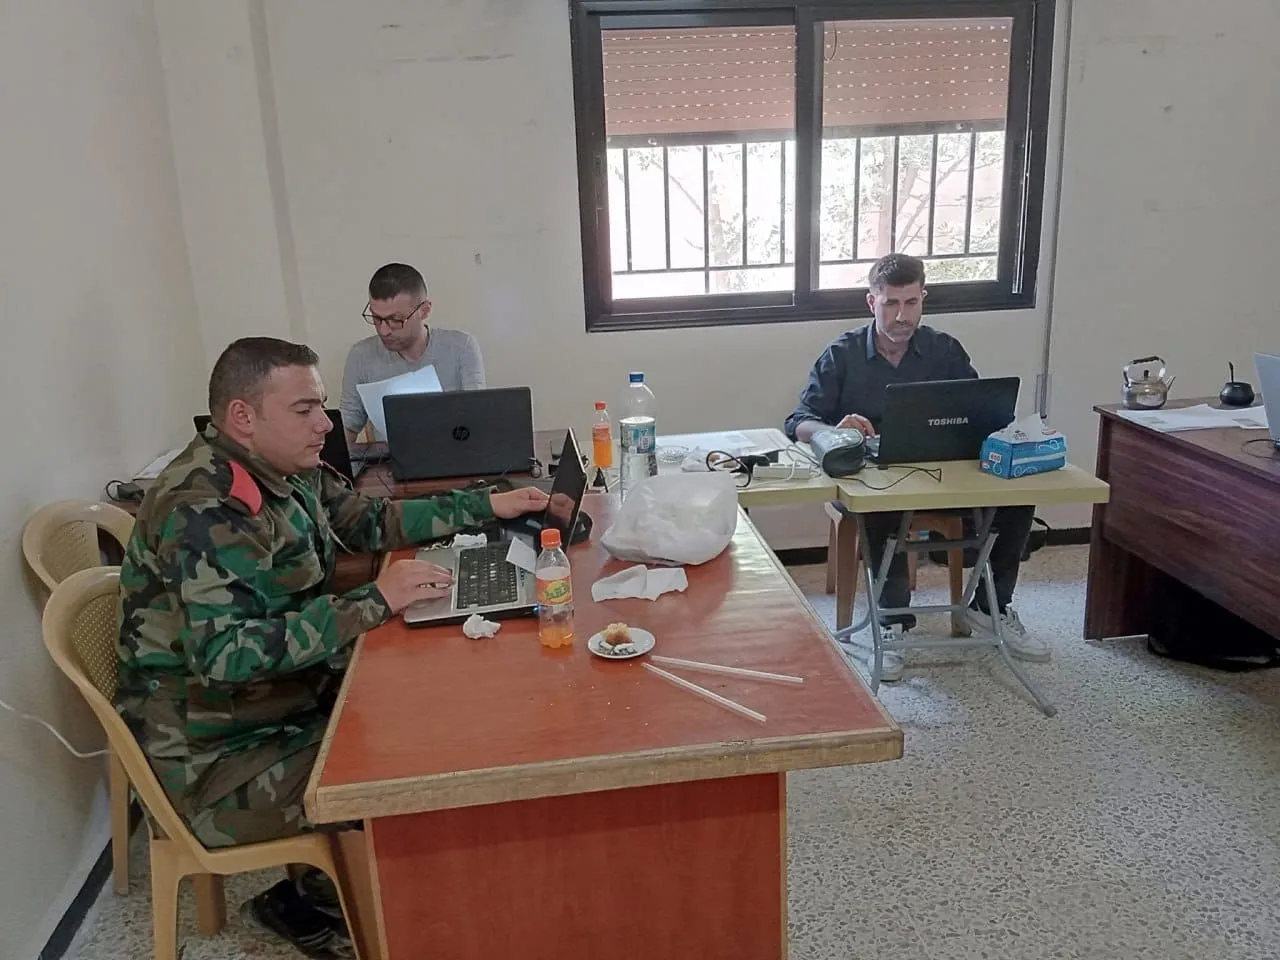 بعد مفاوضات وتهديدات .. النظام يُطلق "مركز تسوية" بـ "تلبيسة" شمالي حمص